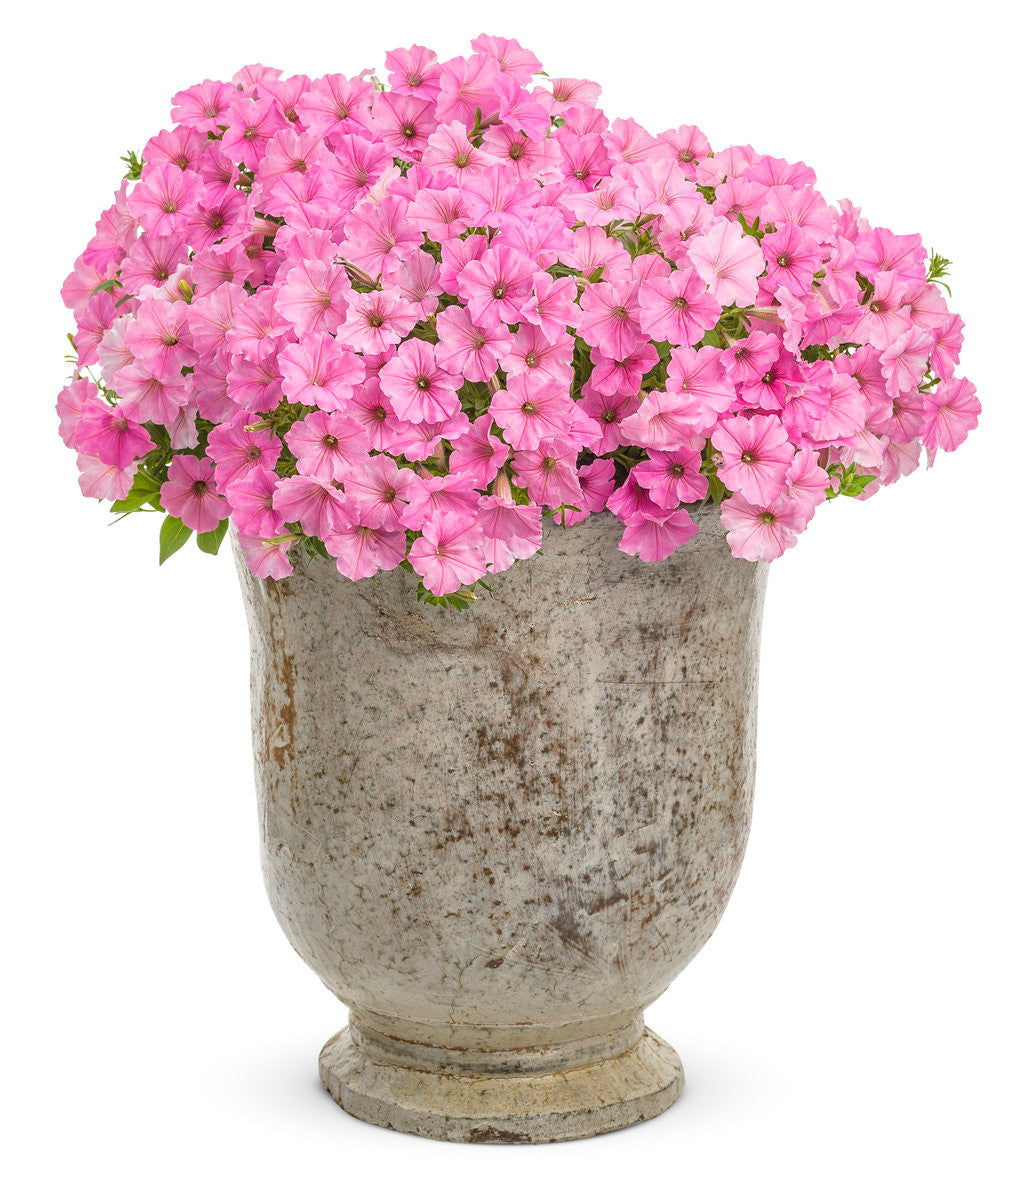 Petunia hybrid 'Supertunia Vista® Bubblegum®' in decorative pot